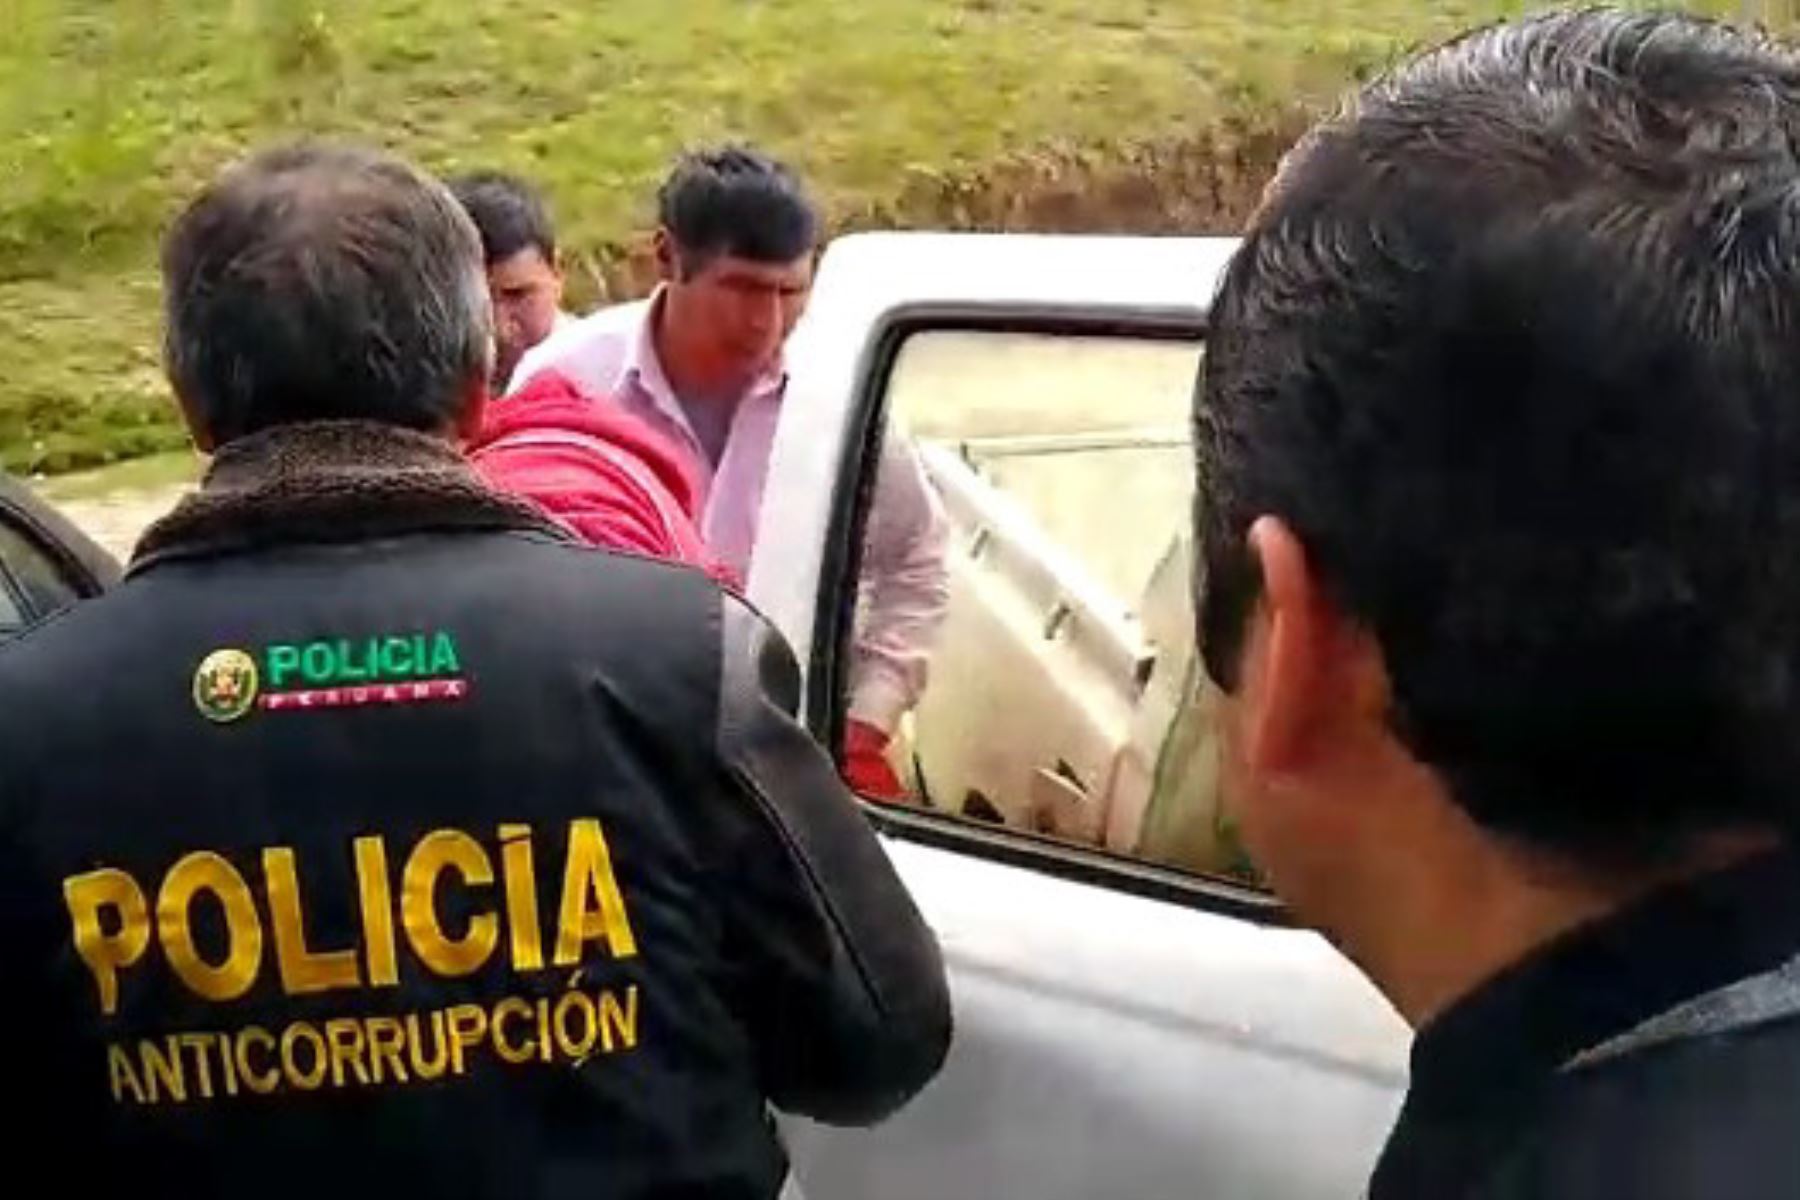 Policía Anticorrupción detuvo a dos efectivos de la comisaría de Junín involucrados en el cobro de una presunta coima.